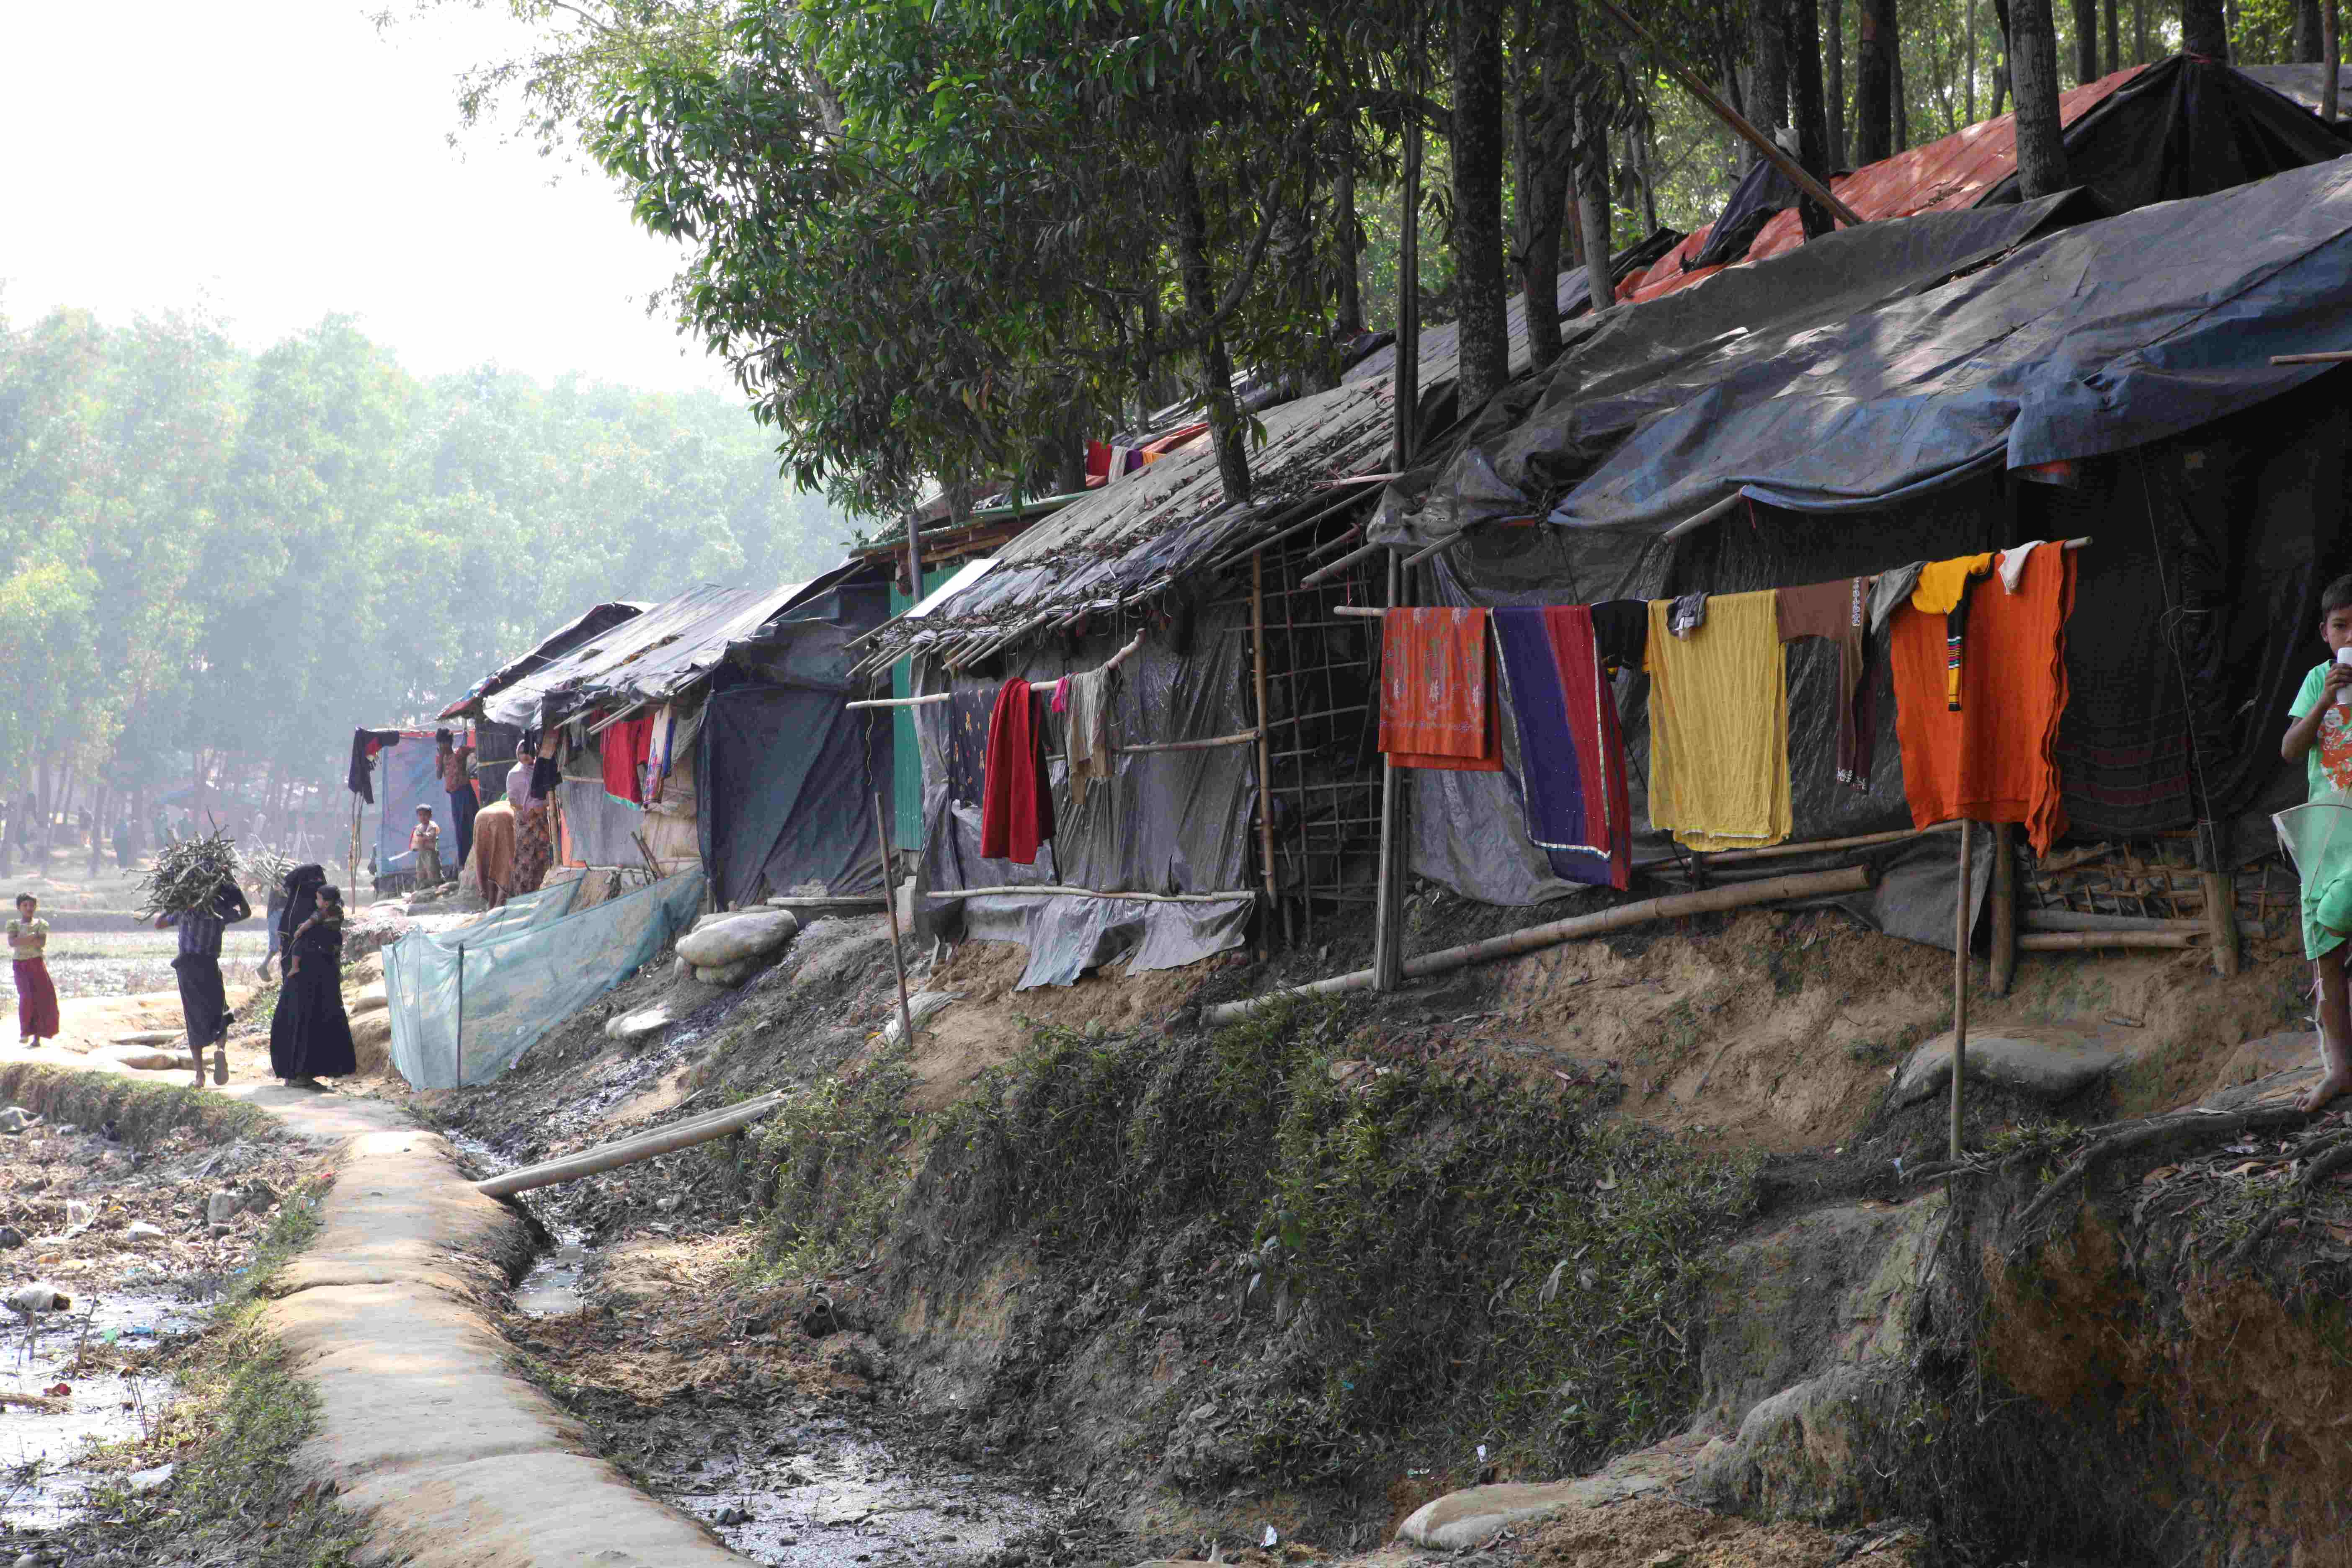 Das Flüchtlingslager Cox's Bazar in Bangladesch. Unzählige Hütten aus Ästen und Plastikplanen reihen sich an einander. (Quelle: Christian Herrmanny)